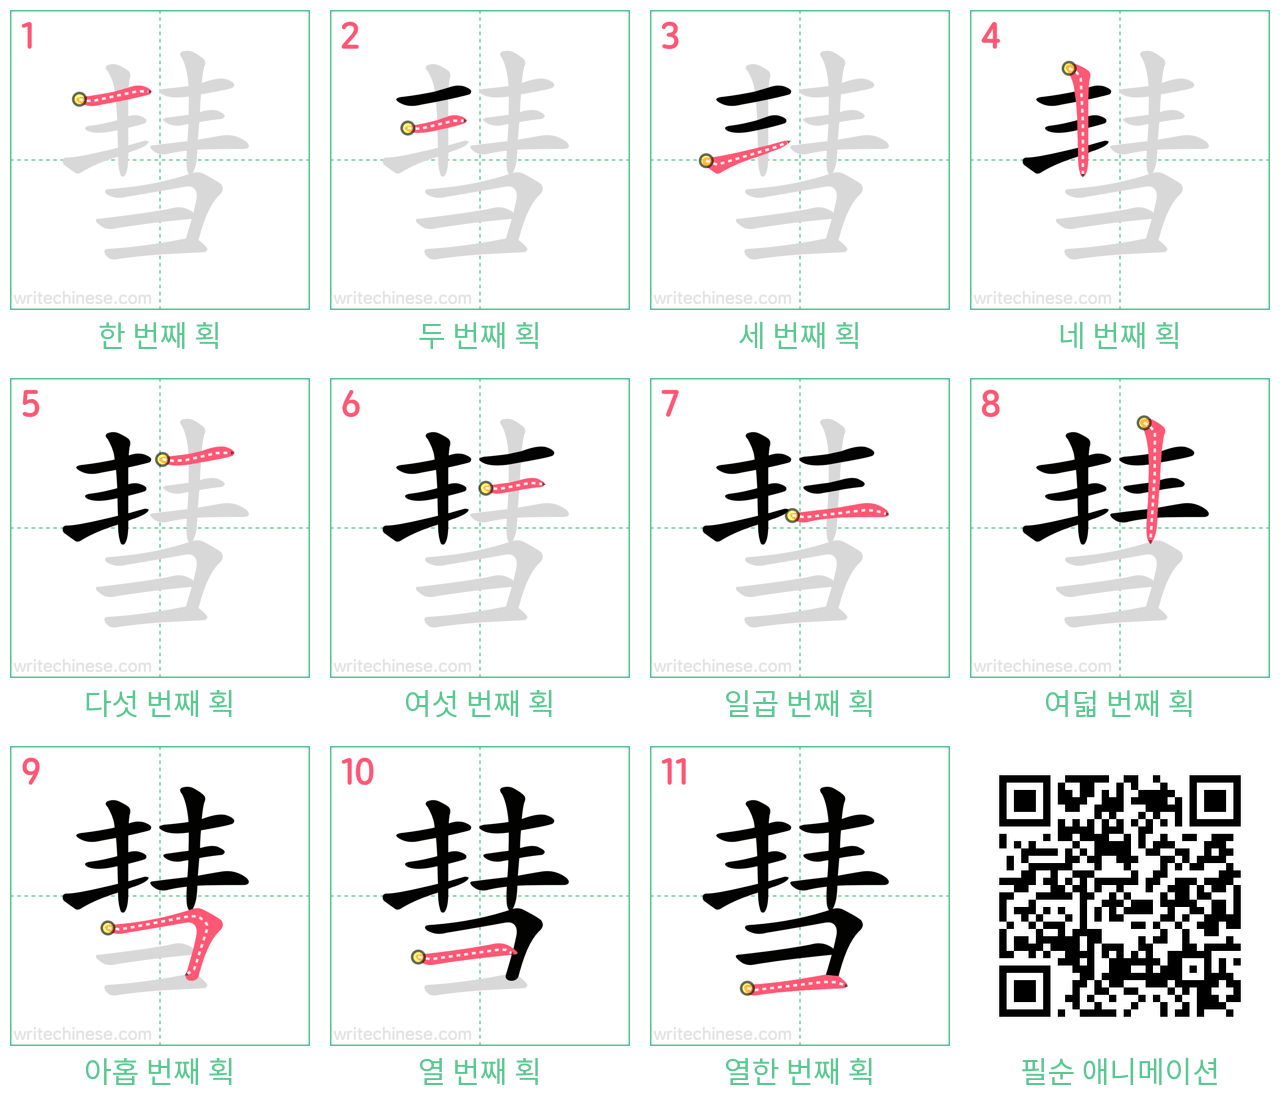 彗 step-by-step stroke order diagrams